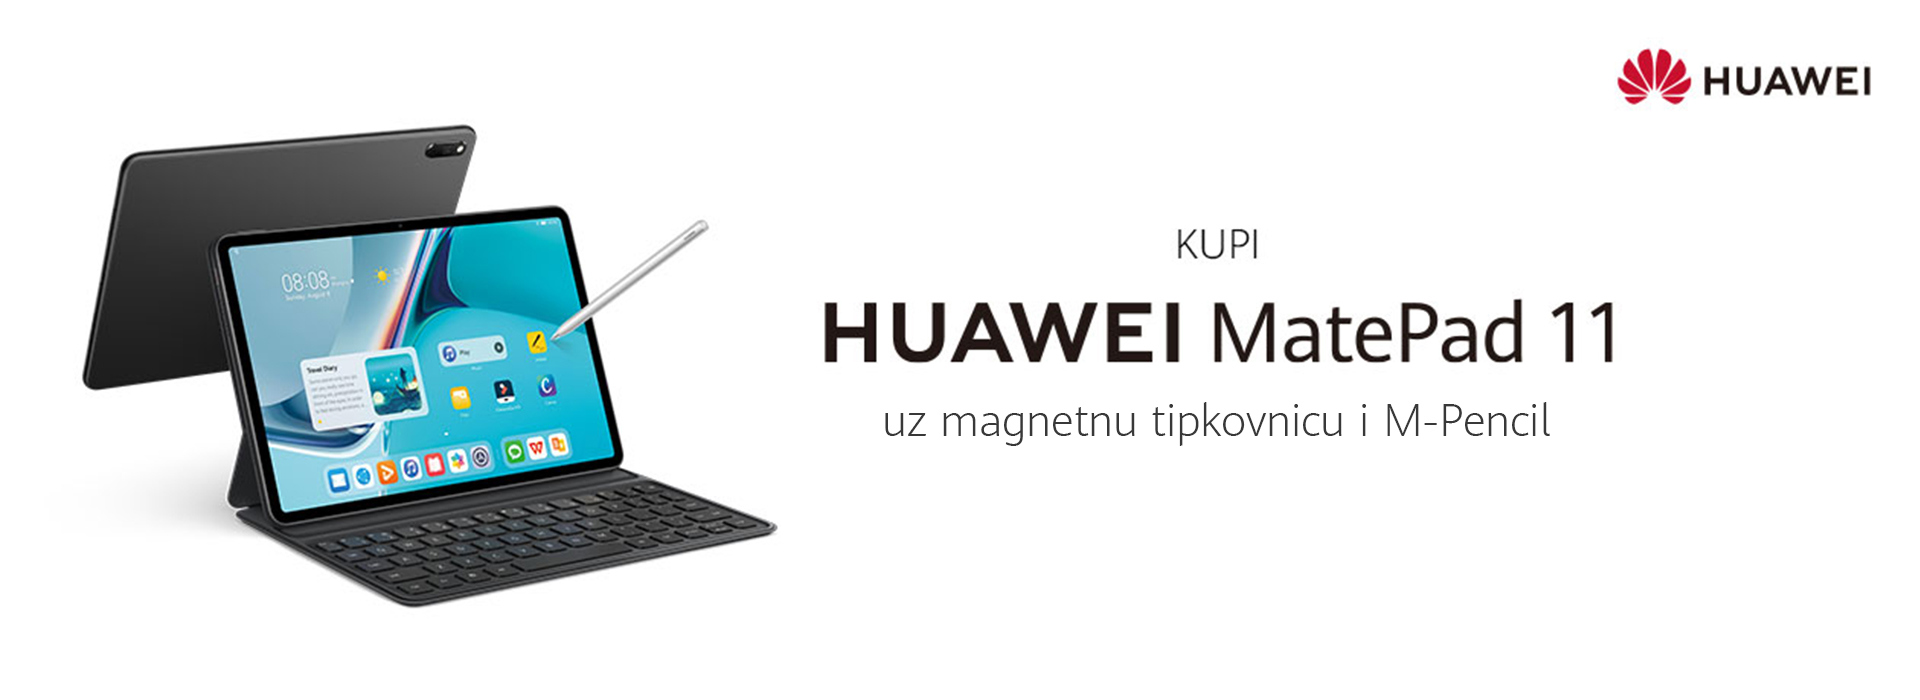 Huawei MatePad 11 – prvi tablet sa Harmony OS operativnim sustavom odsada u kombinaciji sa pametnom 